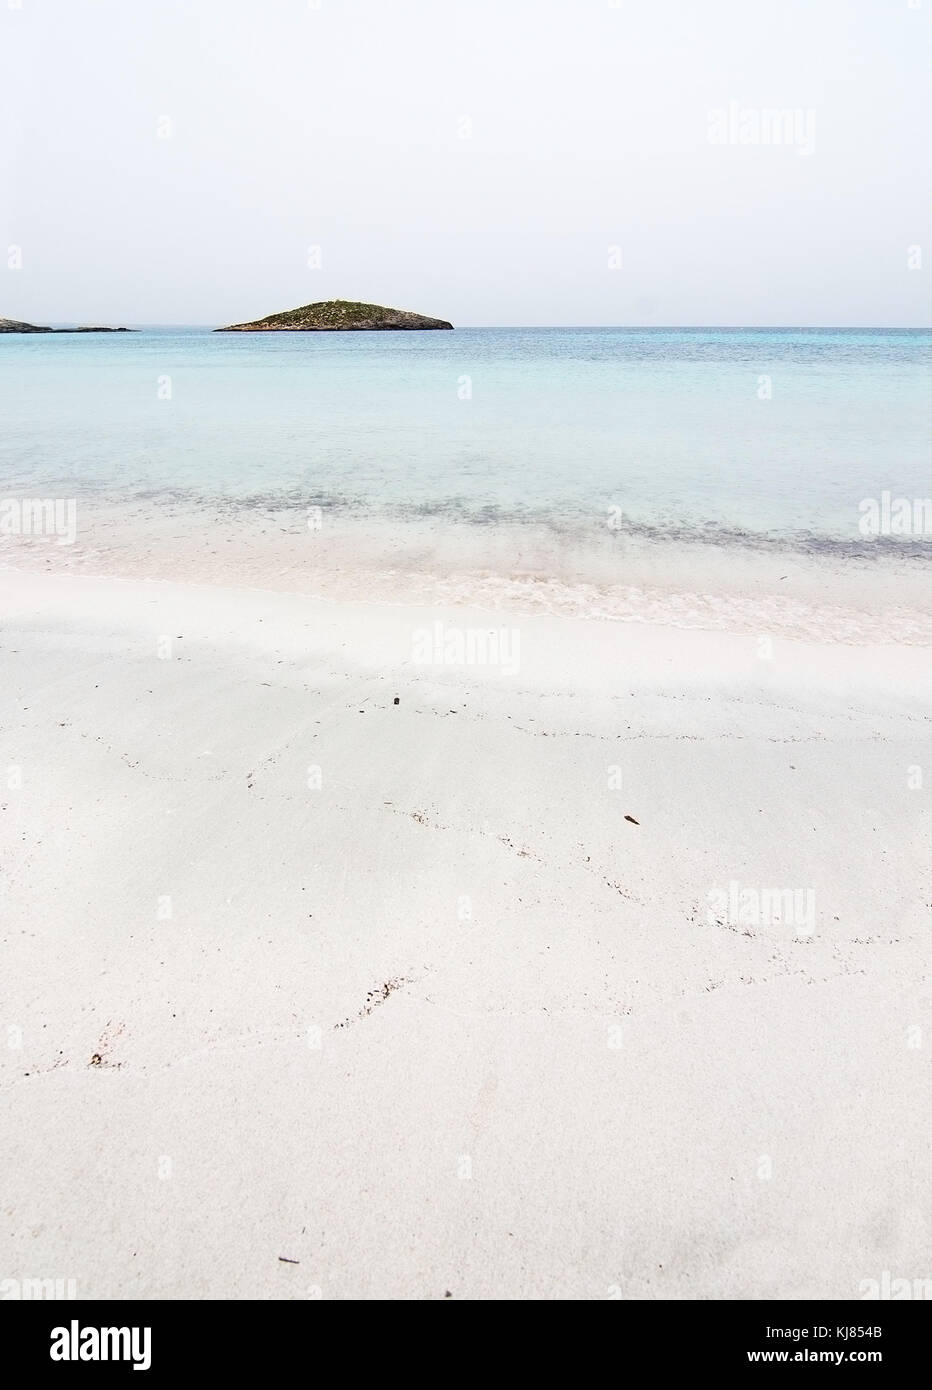 Doux rêveur vide Paradise beach avec de l'eau claire comme du cristal sur l'image en octobre à Illetas, Majorque, Iles Baléares, Espagne. Banque D'Images